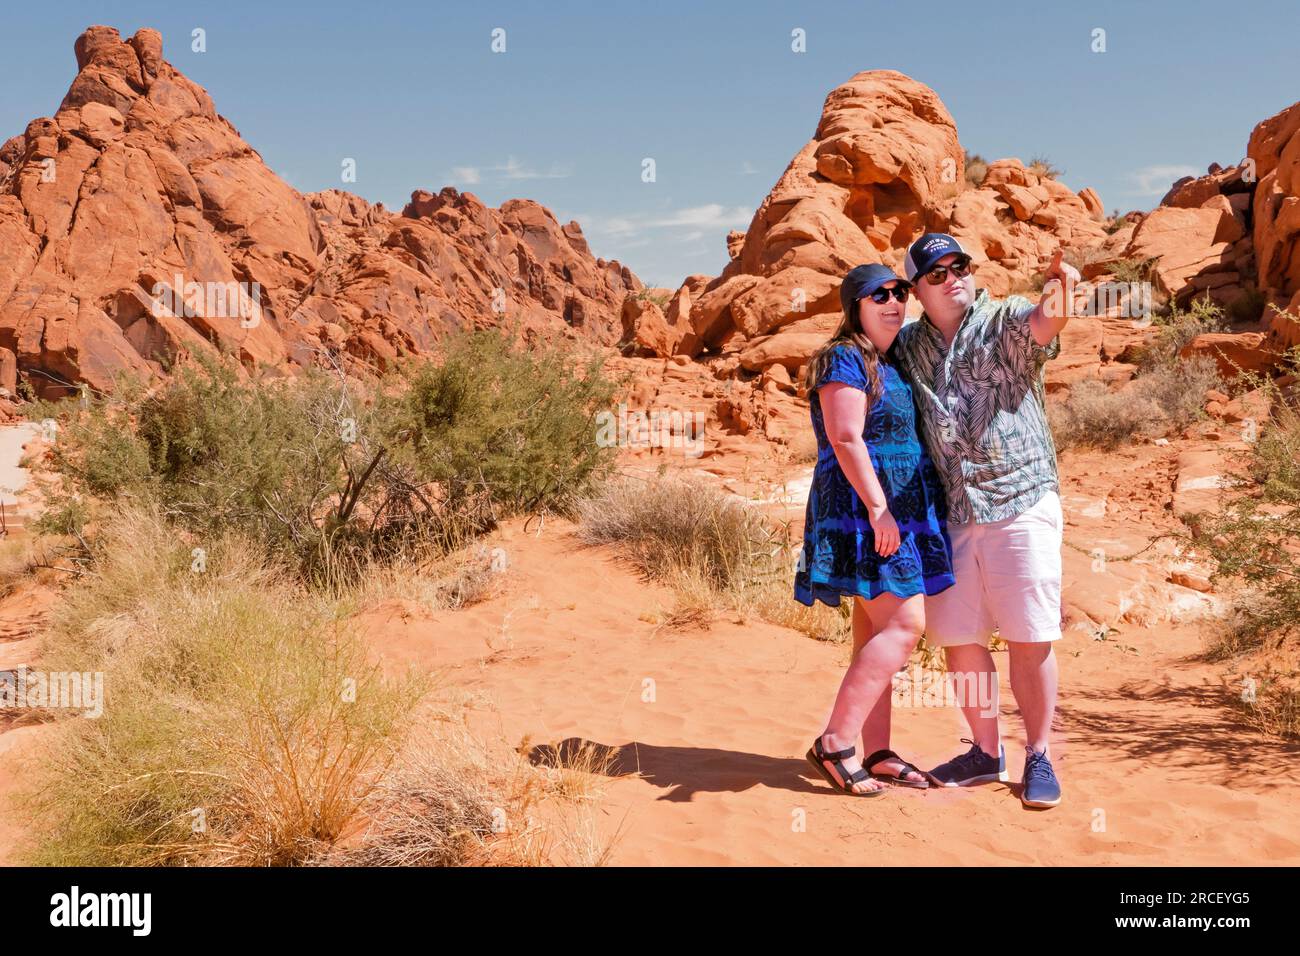 'Touristes visitant la vallée de feu' Nevada États-Unis Banque D'Images